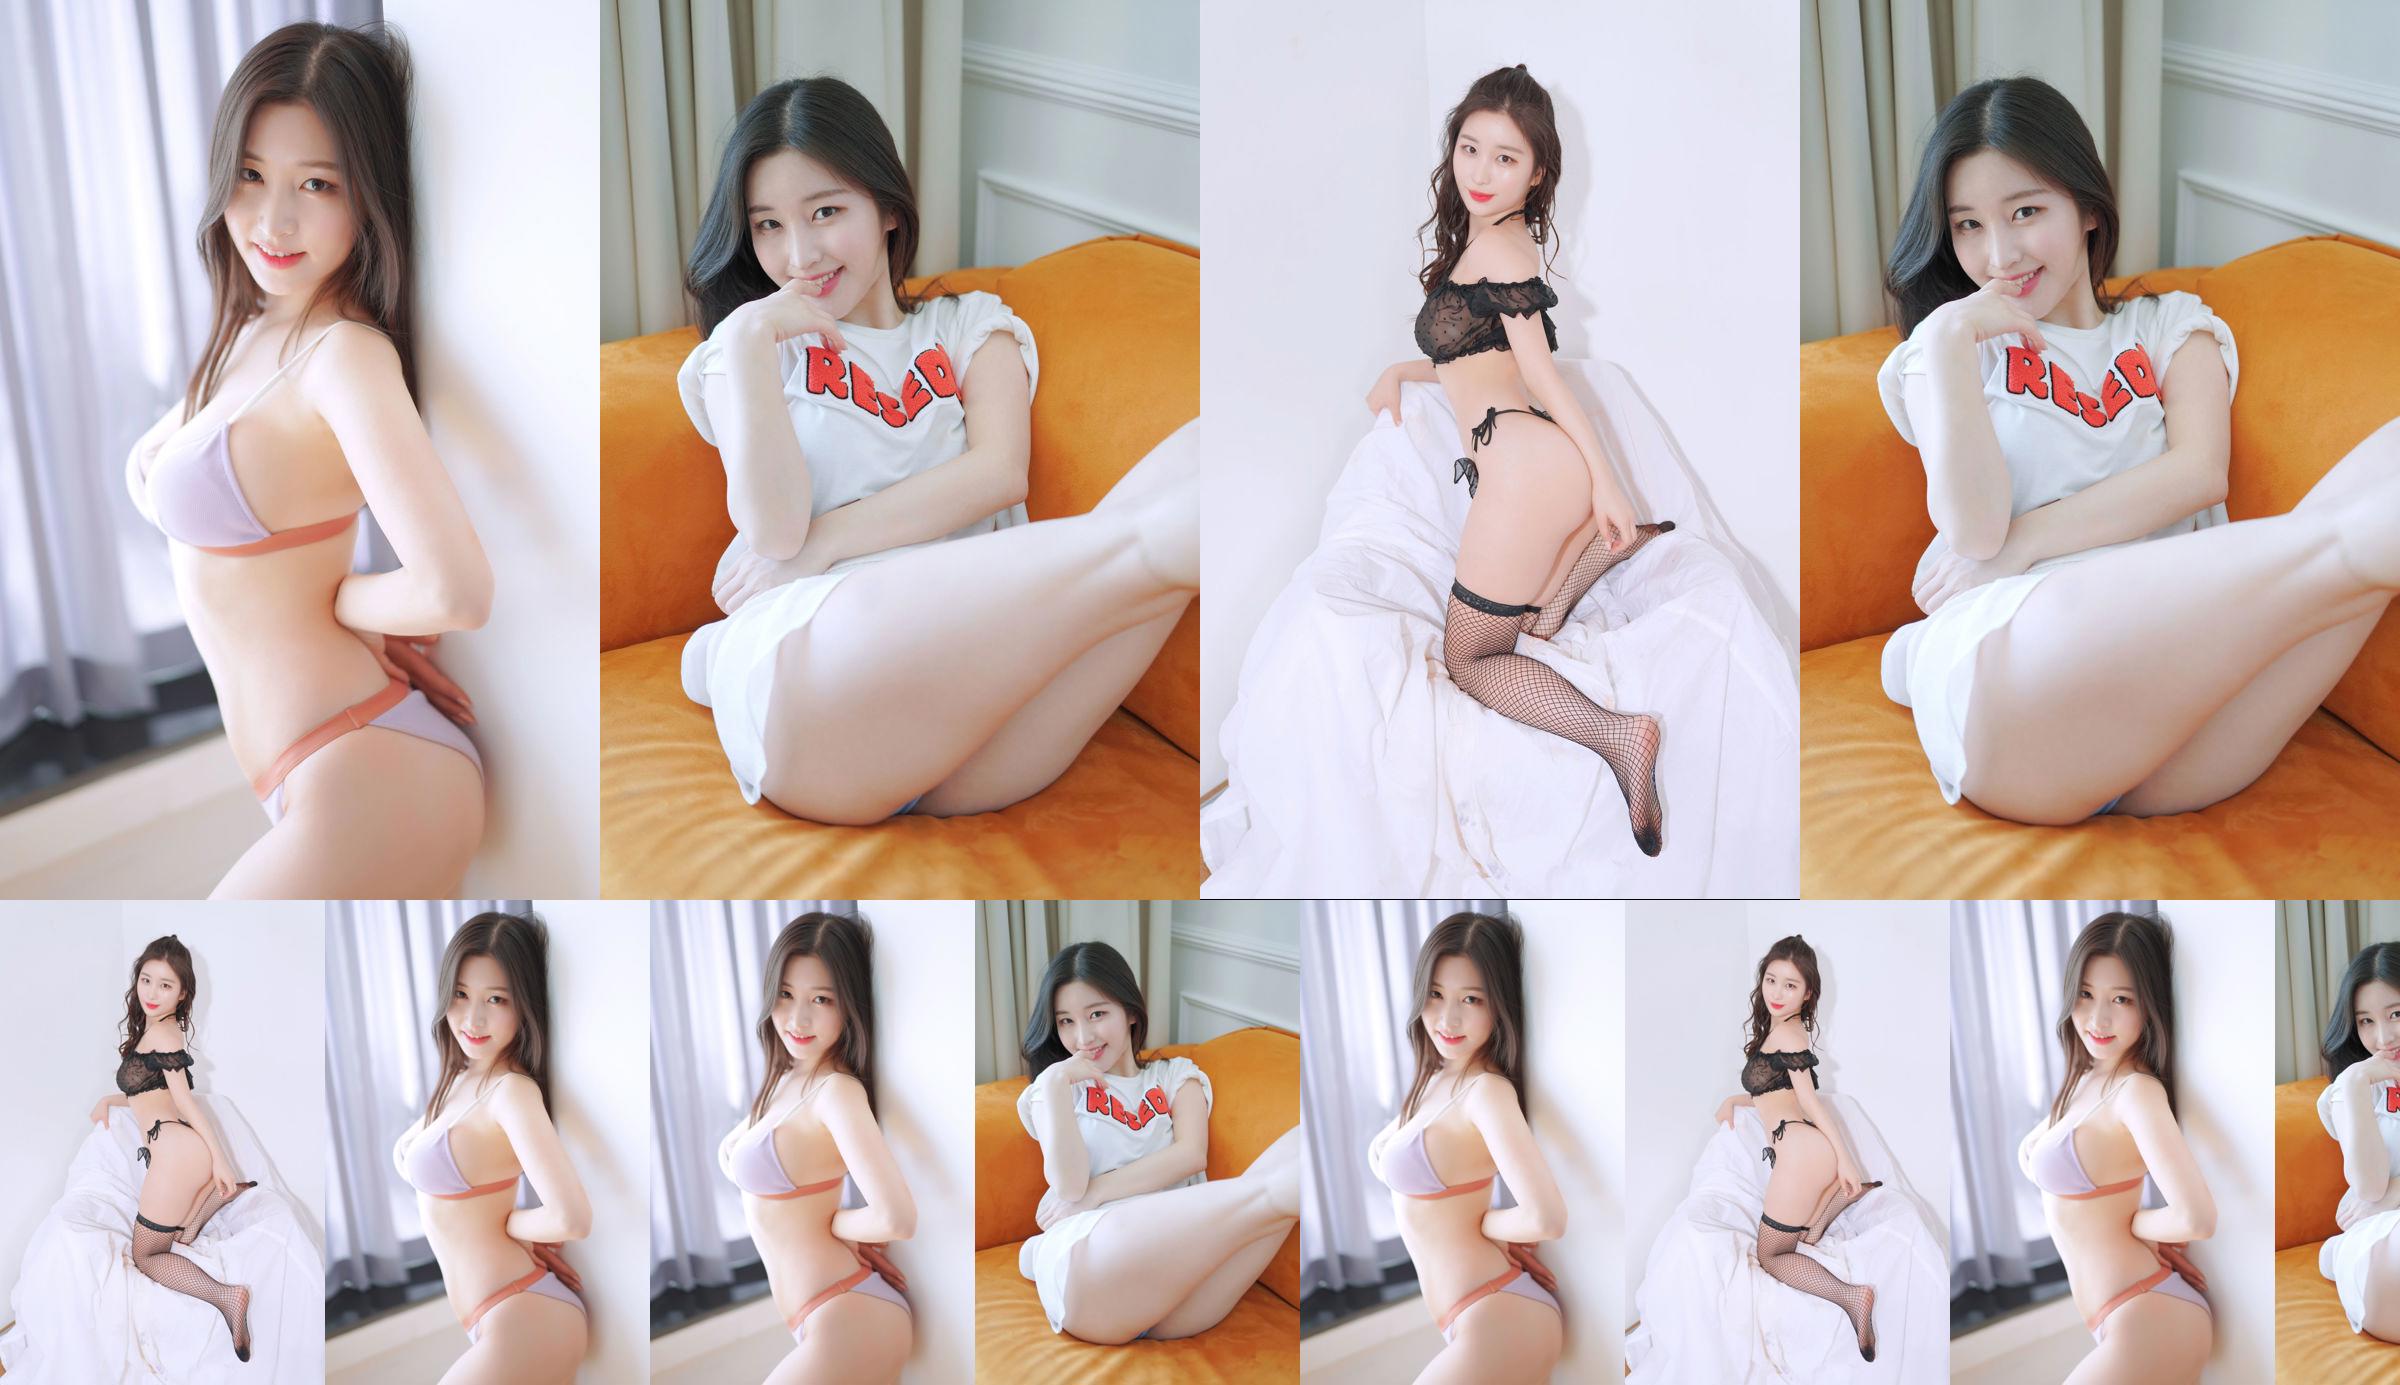 [Bosque rosa] - Najung Vol.1 Sunny Side - Kim Na Jung No.7e41db Página 1